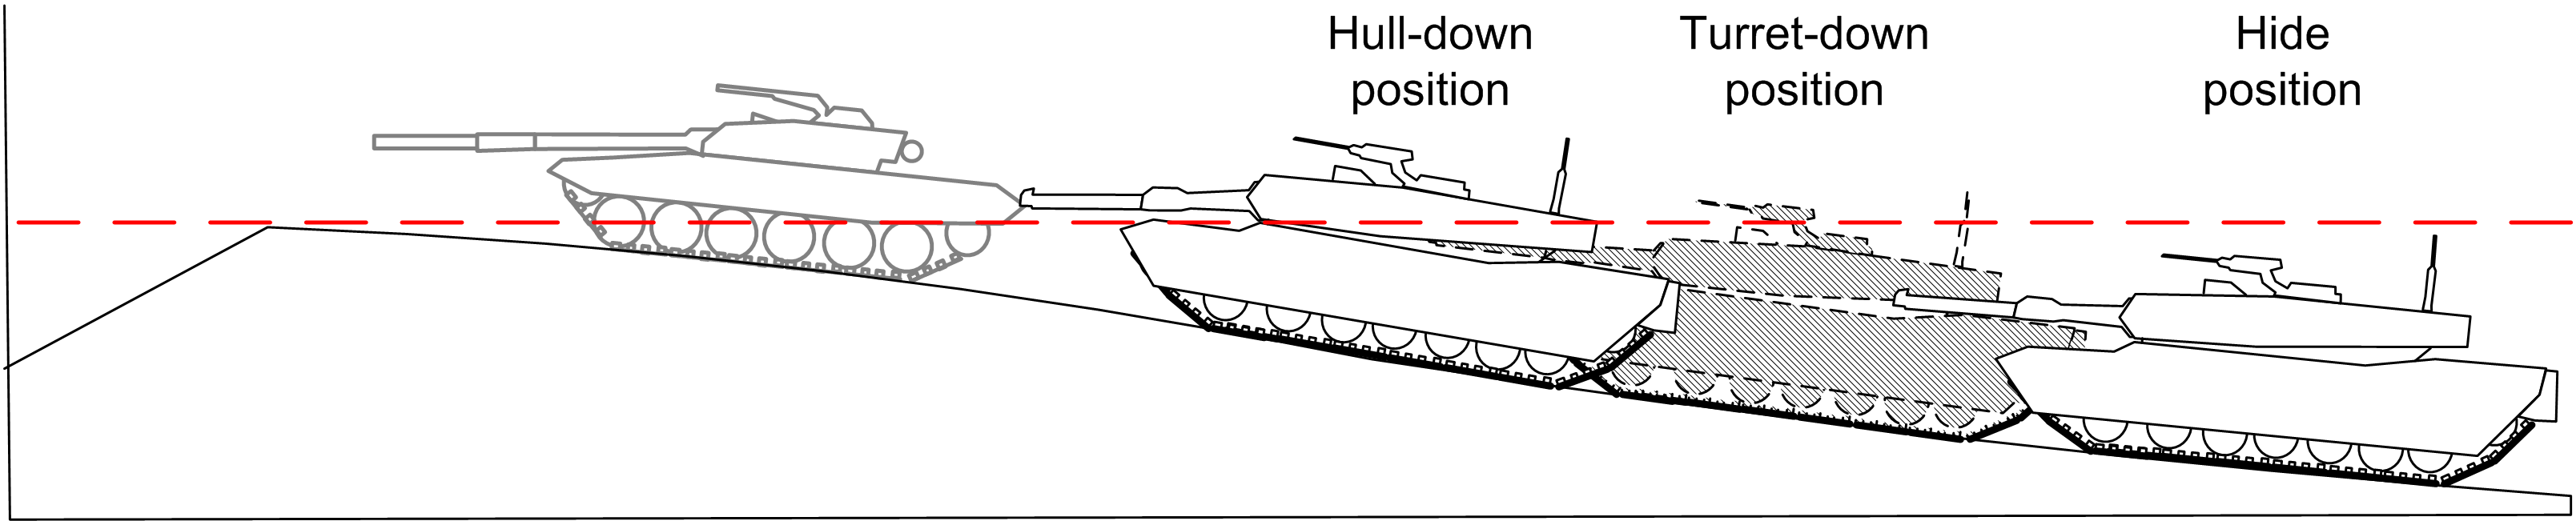 Hull_down_tank_diagram.png